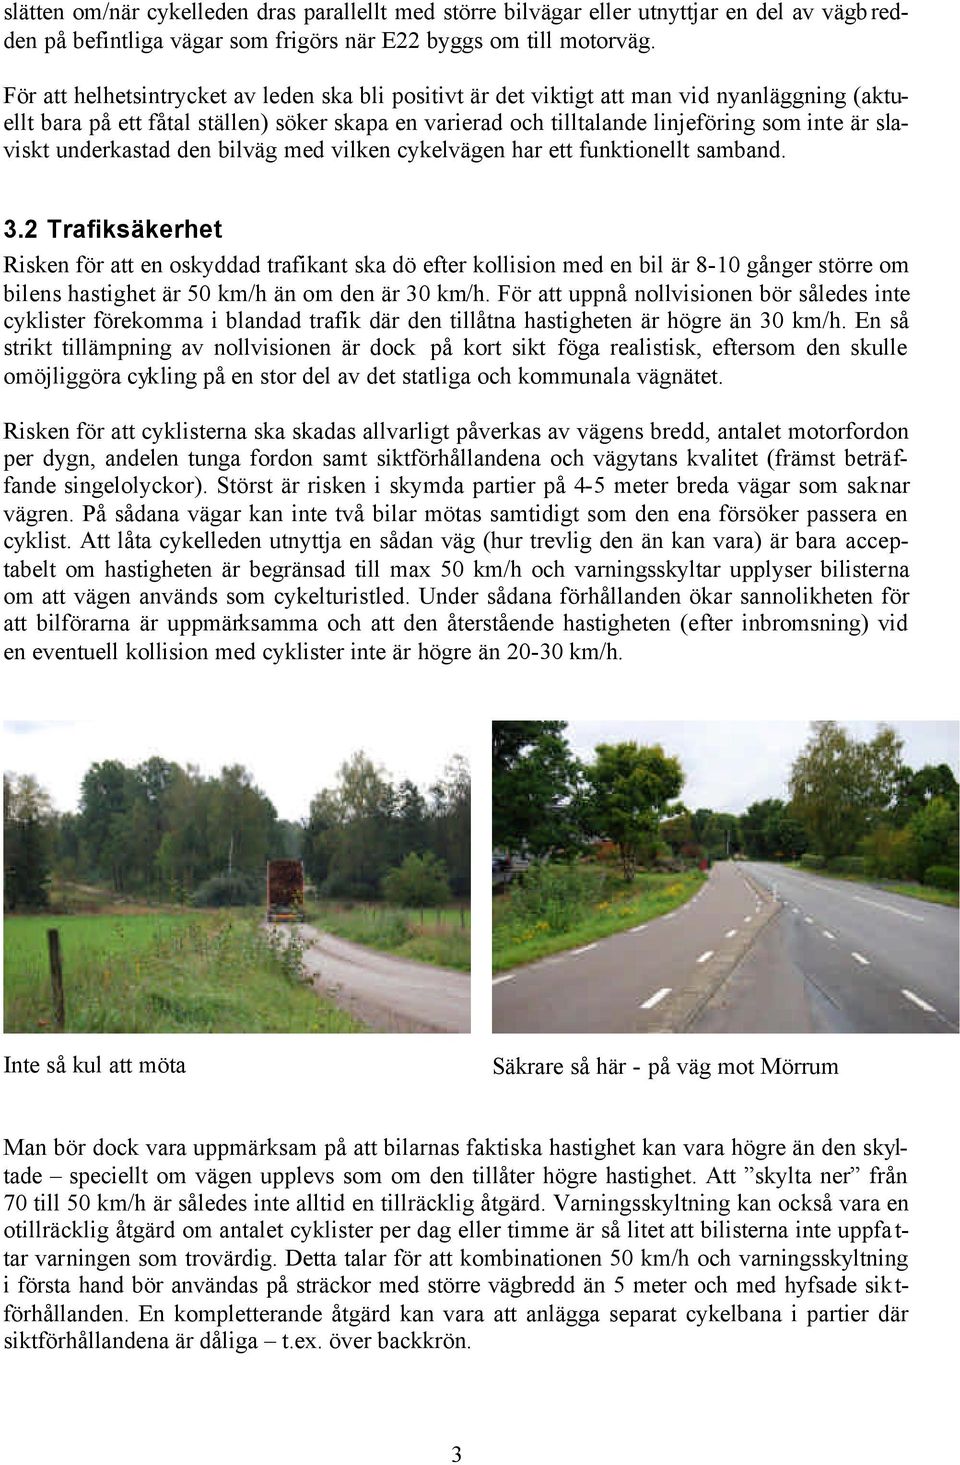 slaviskt underkastad den bilväg med vilken cykelvägen har ett funktionellt samband. 3.